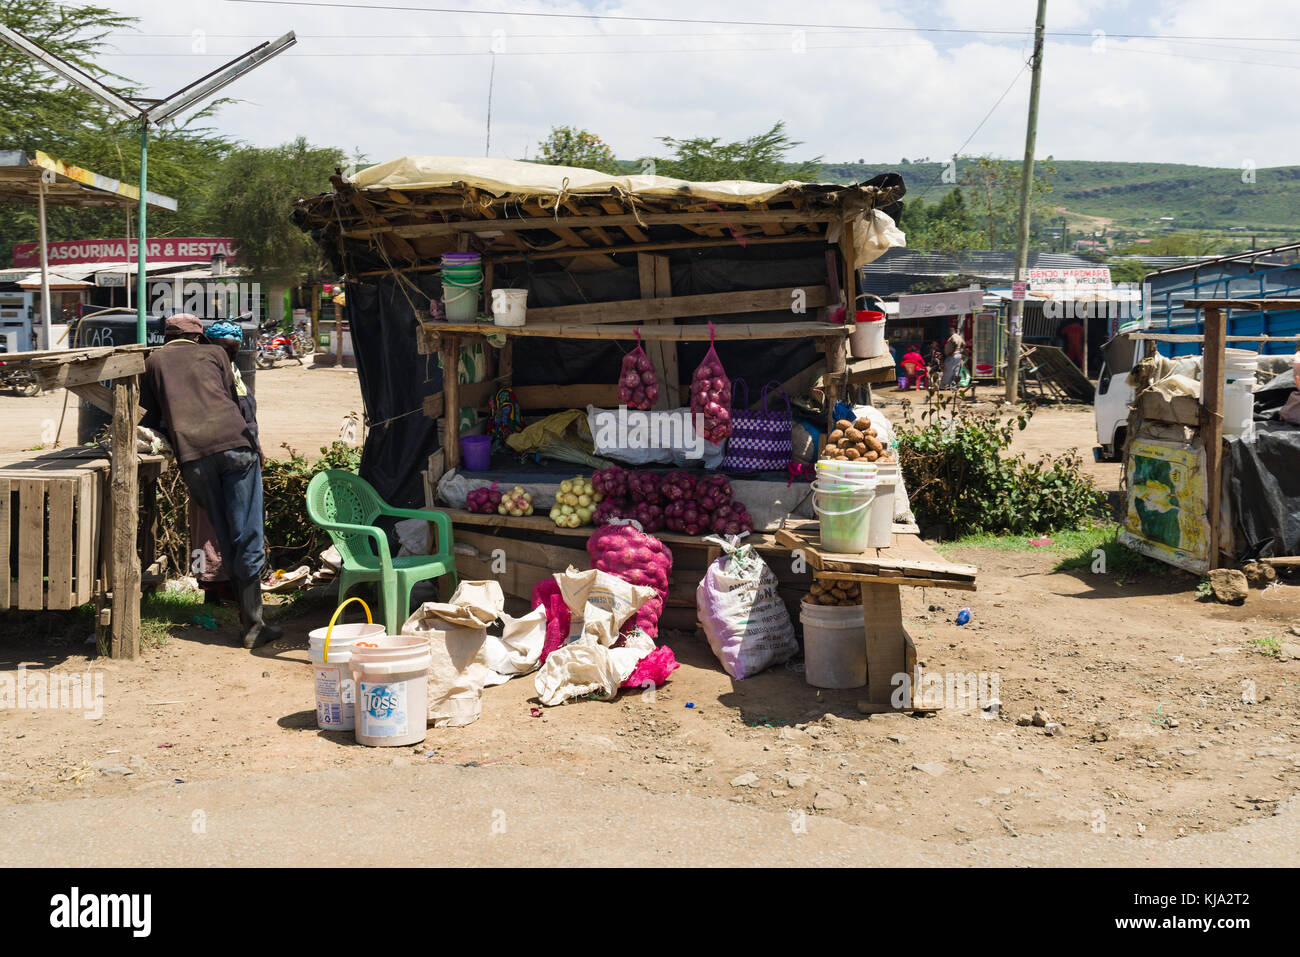 Un africain se distingue par son échoppe avec fruits et légumes en vente sur le bord de la route, Kenya, Afrique de l'Est Banque D'Images